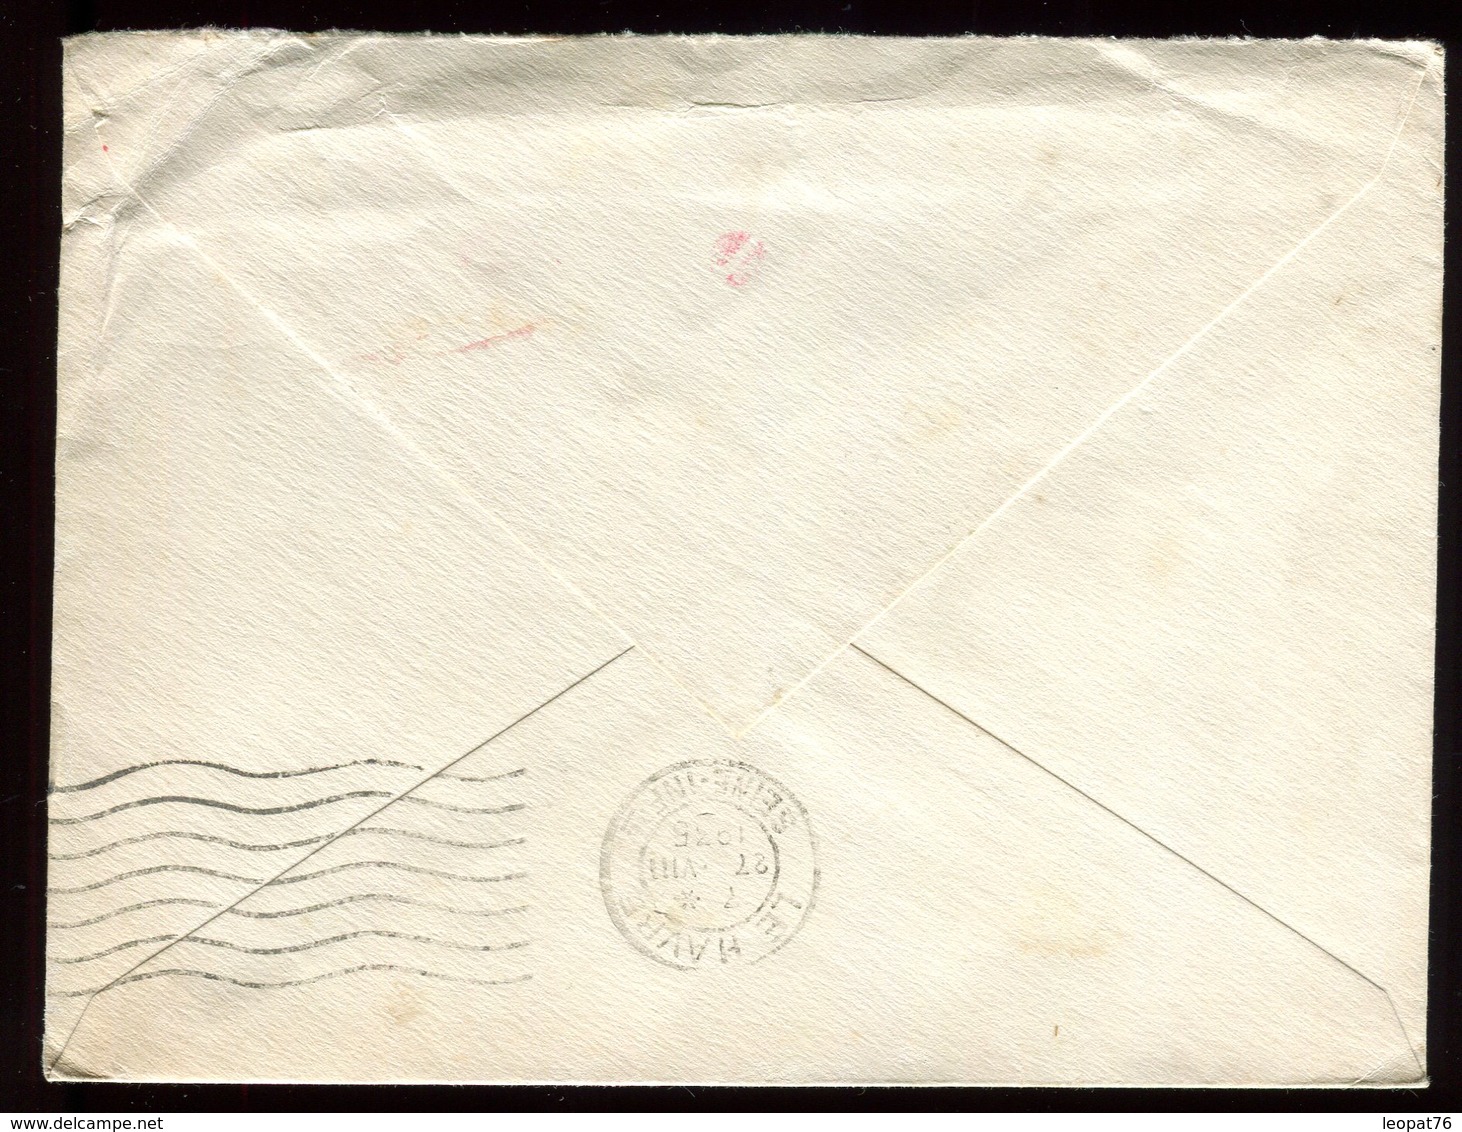 Canada - Enveloppe De Montréal Pour Le Havre E 1935 Via New York , Affranchissement Mécanique - Réf O61 - Covers & Documents